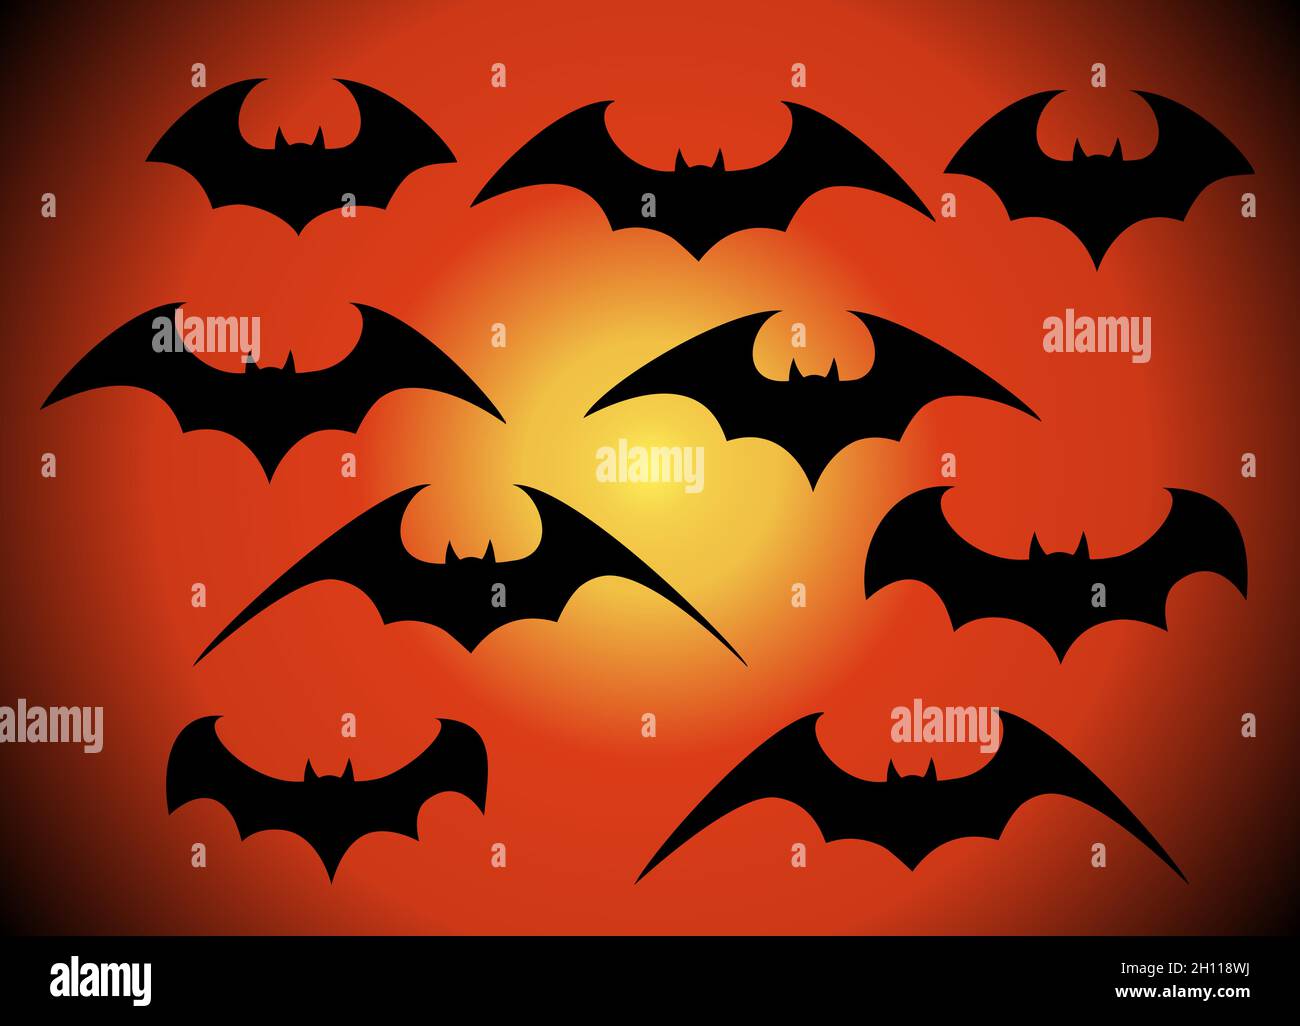 Vector set of different Halloween bats. Halloween flying bats. Vampire vector bat. Dark silhouette of bat flying in a flat style Stock Vector